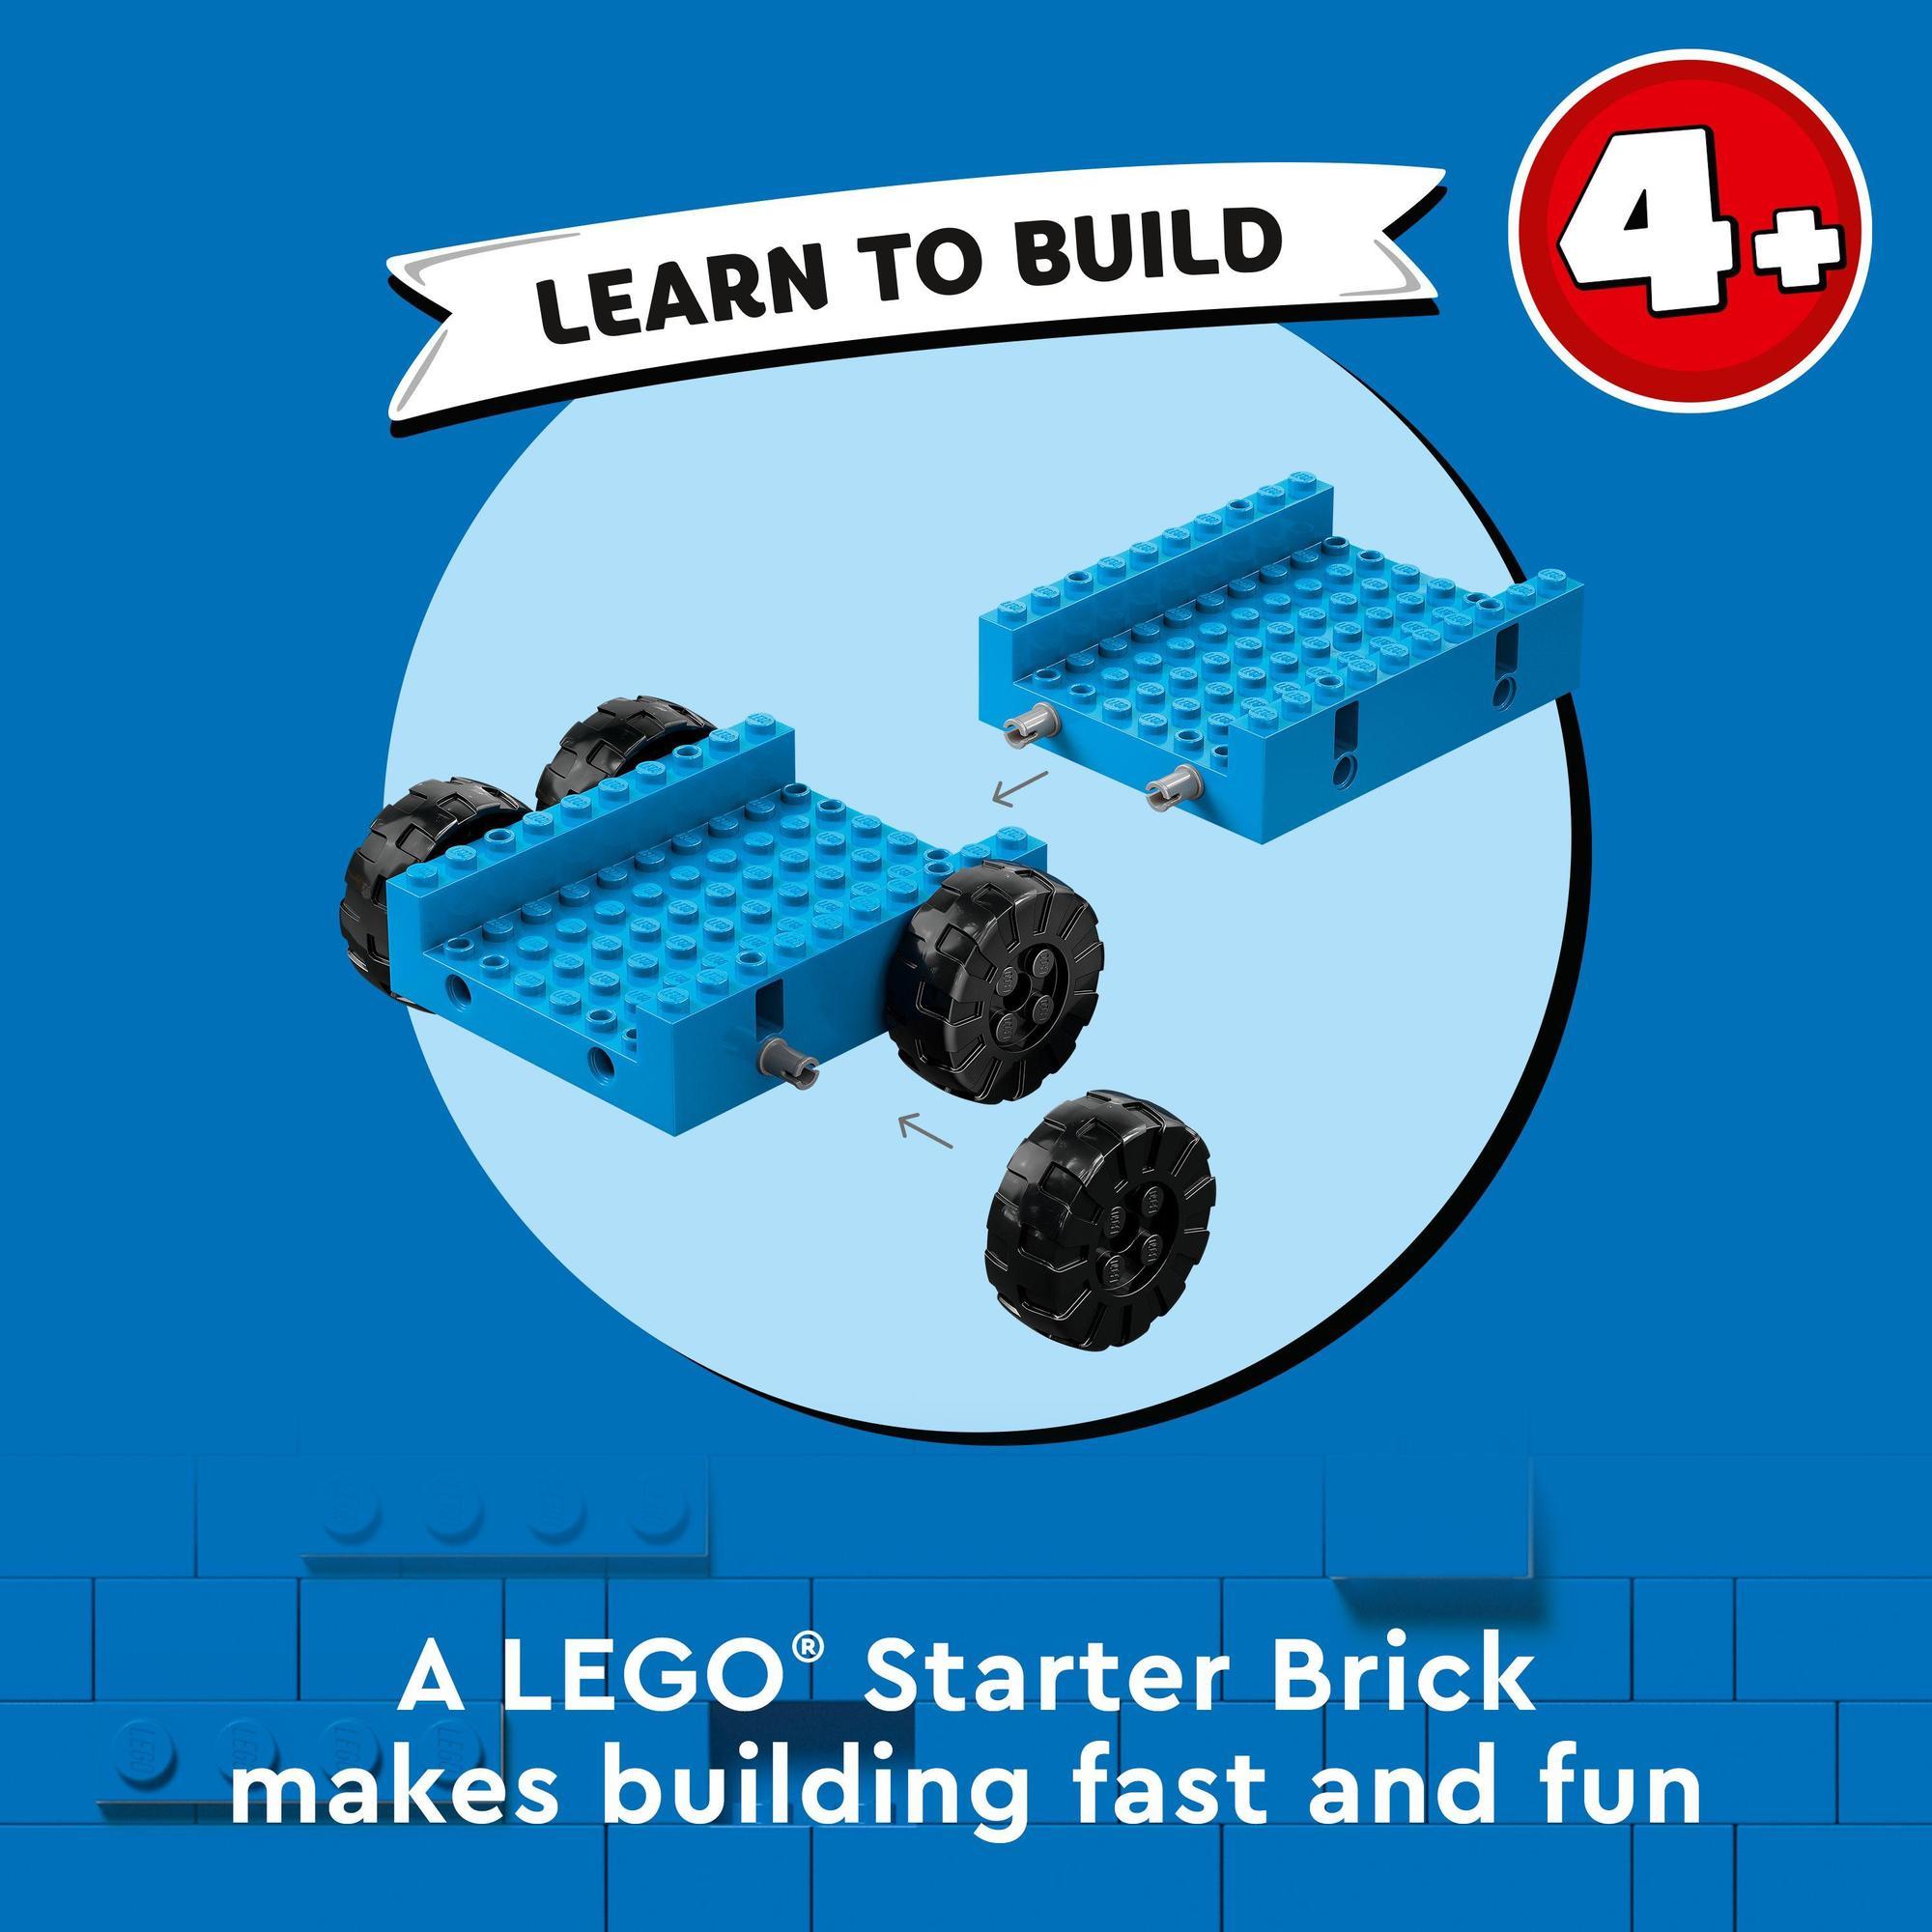 LEGO City 60391 Đồ chơi lắp ráp Xe tải và xe cần cẩu công trình (235 chi tiết)